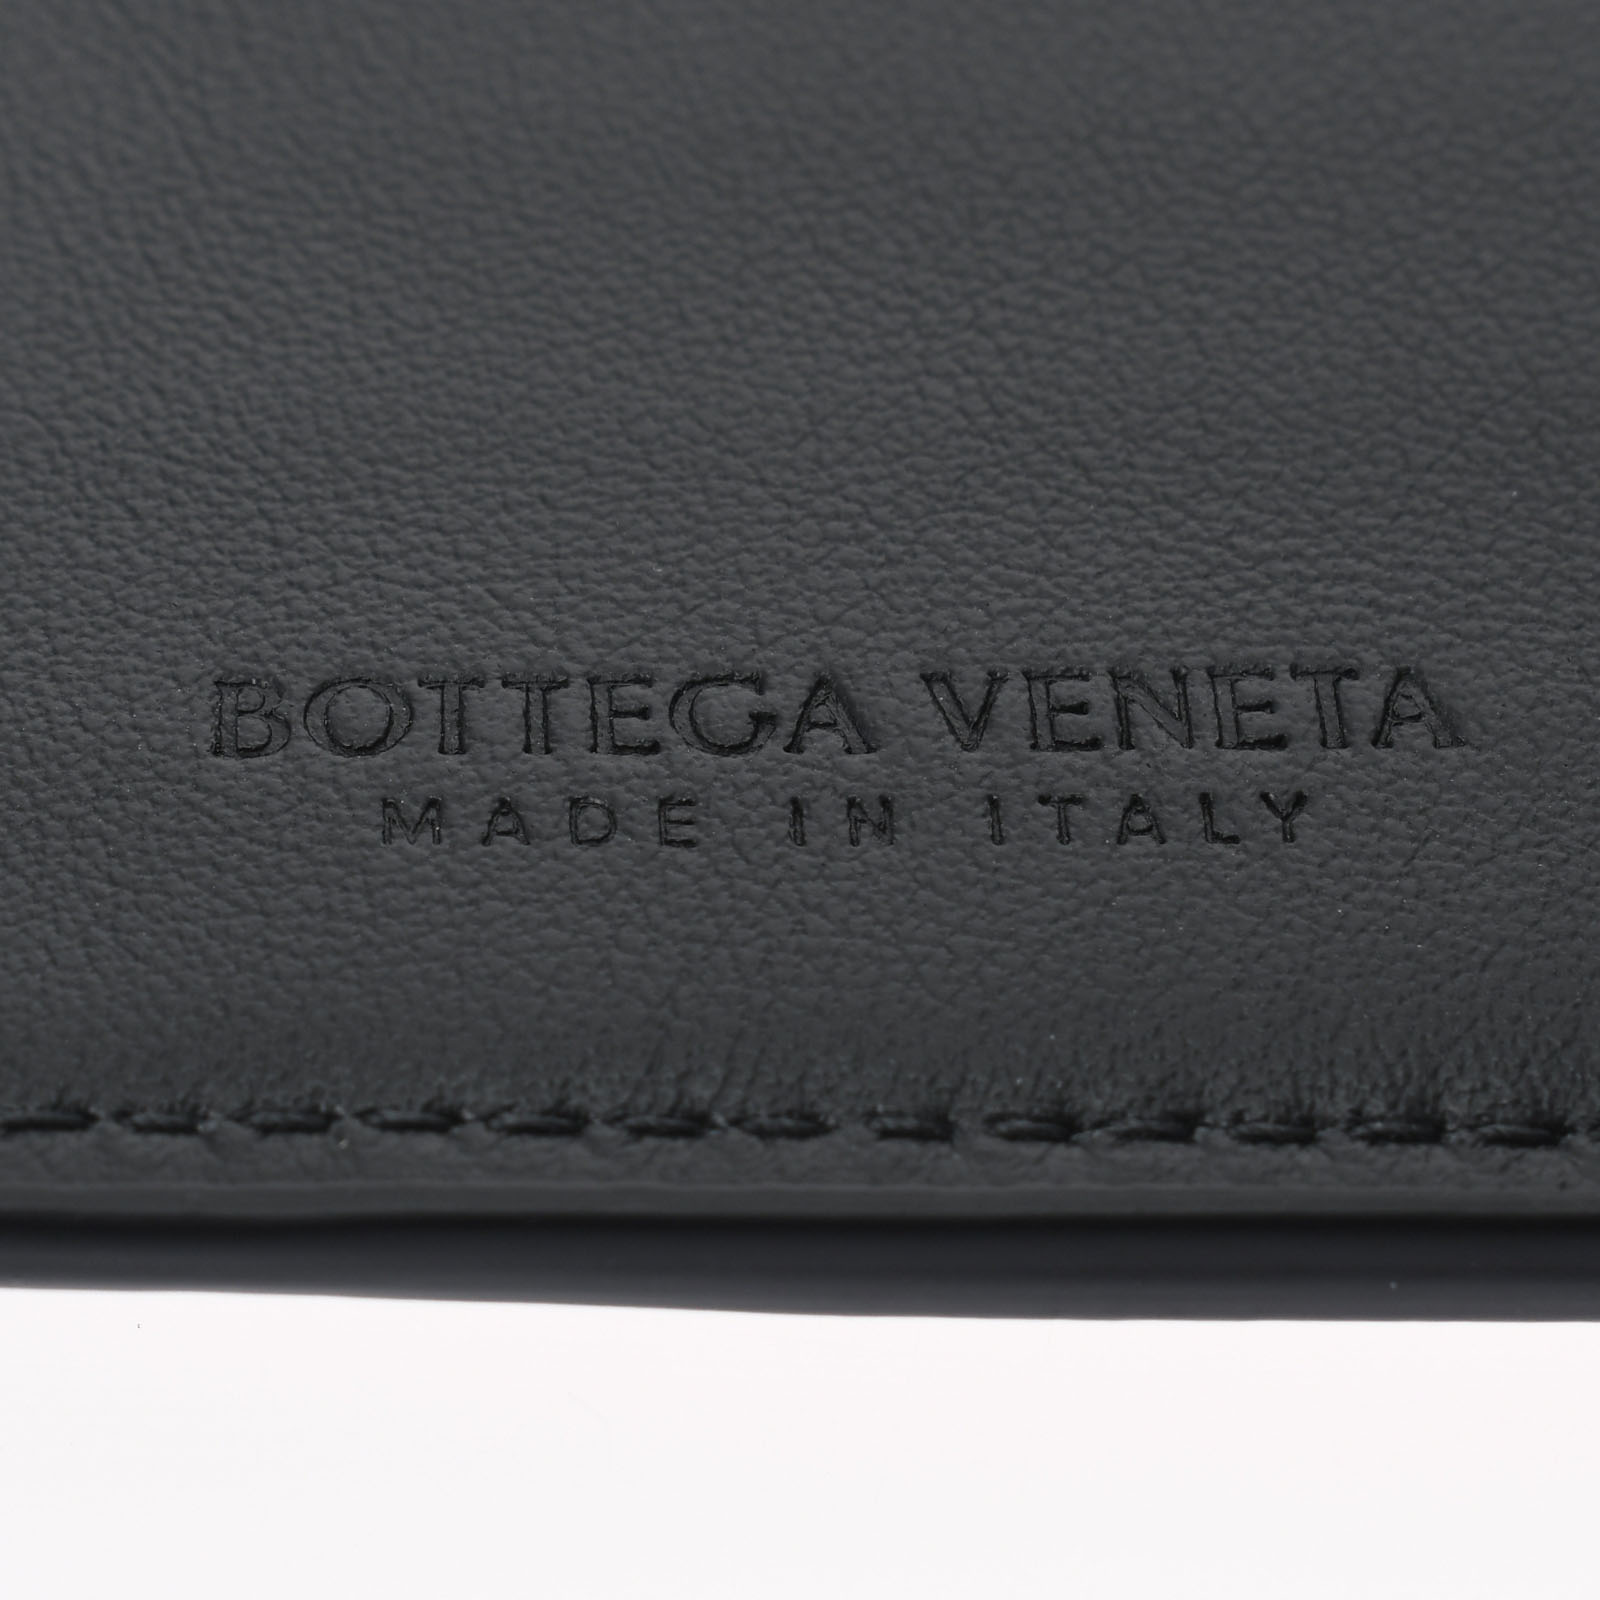 ボッテガ ヴェネタ / BOTTEGA VENETA 二つ折り長札入れ 型押し 黒 レザー メンズ 財布 【未使用】【purse】